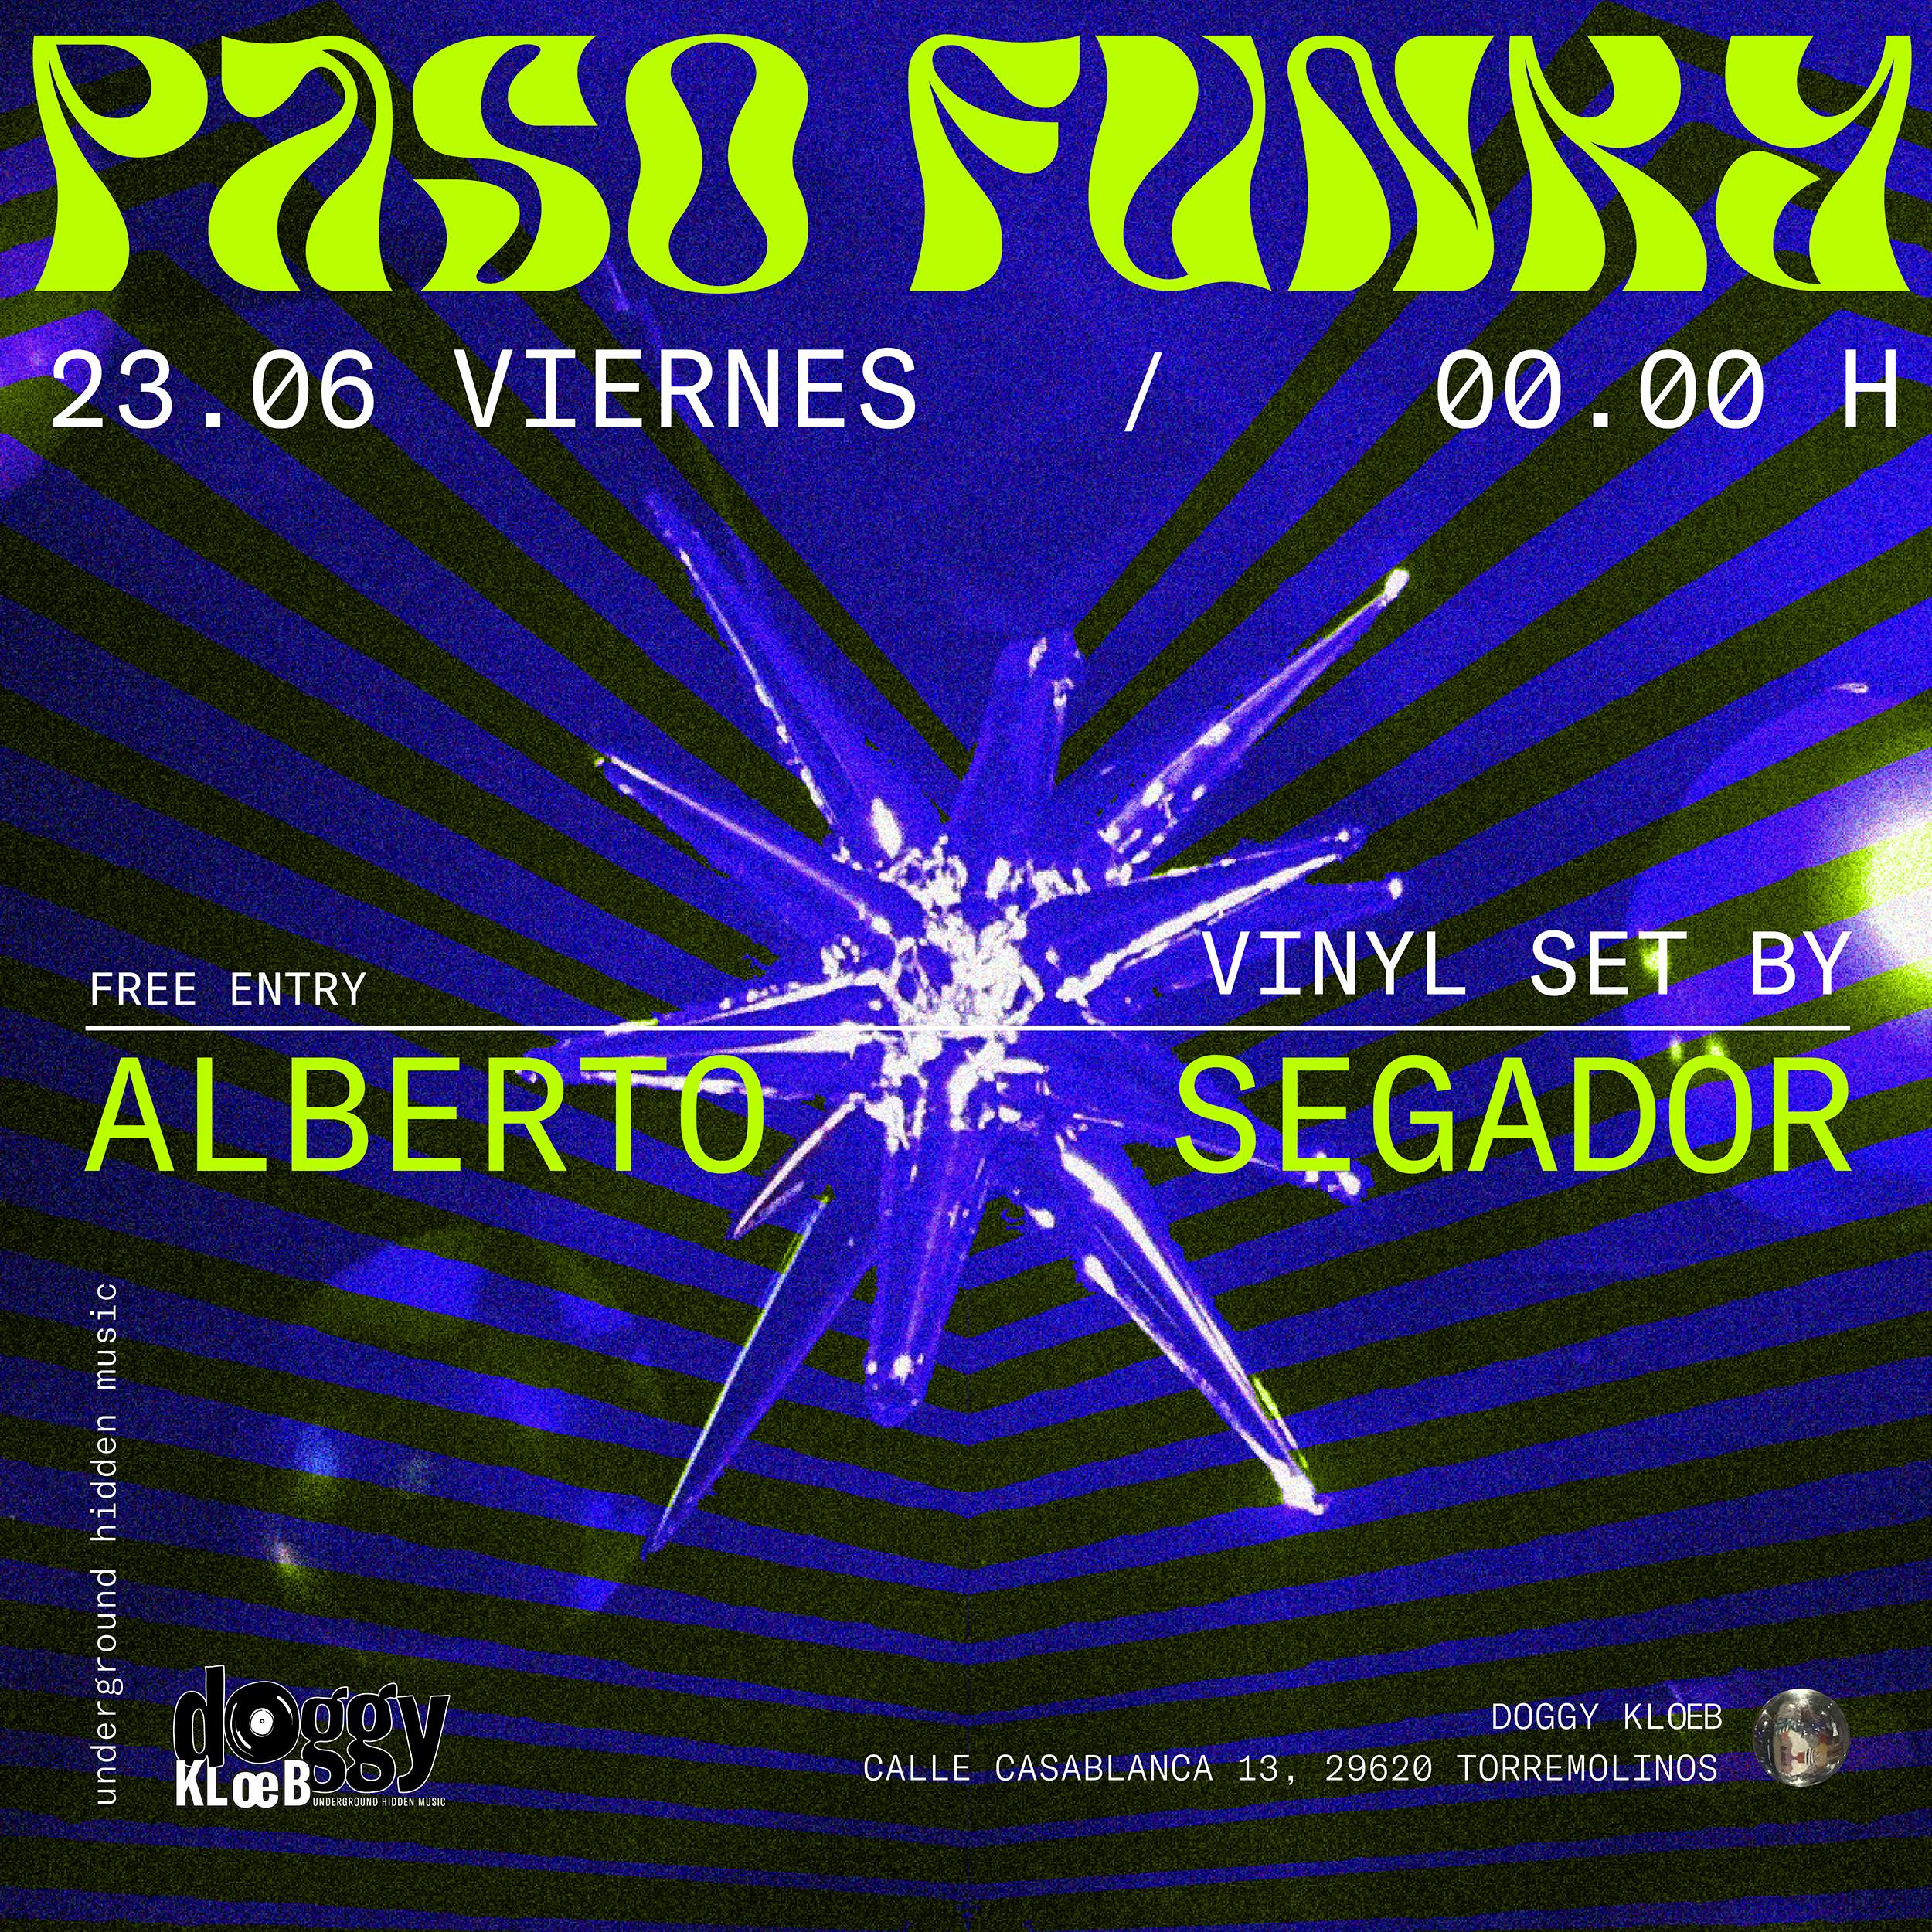 PASO FUNKY w/Alberto Segador - DOGGY KLOEB TORREMOLINOS - フライヤー表